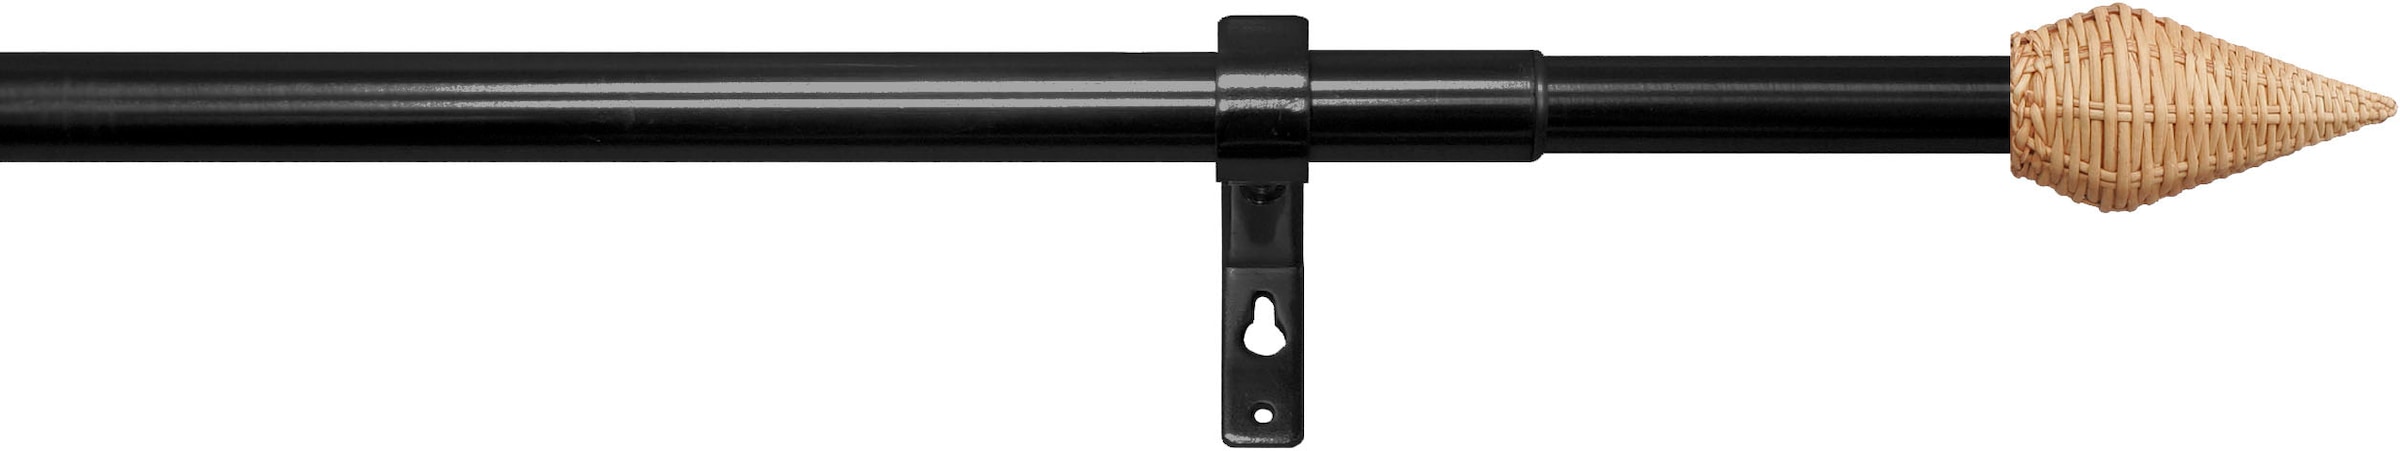 1 Teleskopstange kaufen ausziehbar, stufenlos Gardinenstange läufig-läufig, verstellbare indeko »Rattan Ø13/16mm«,